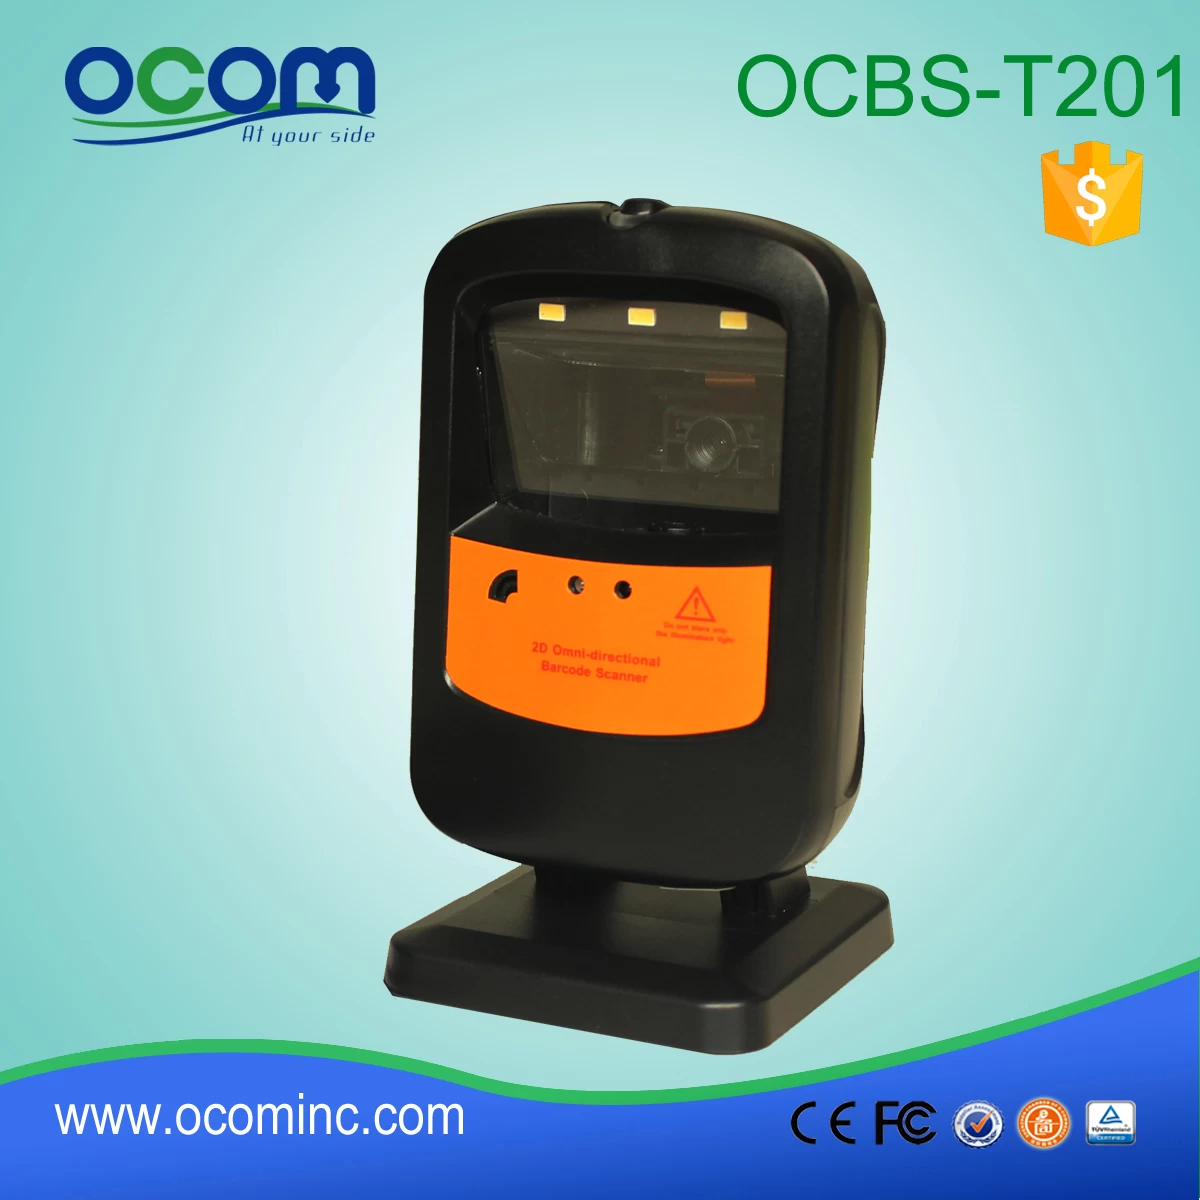 handsfree 2d barcode scanner destop for Imaging (OCBS-T201)